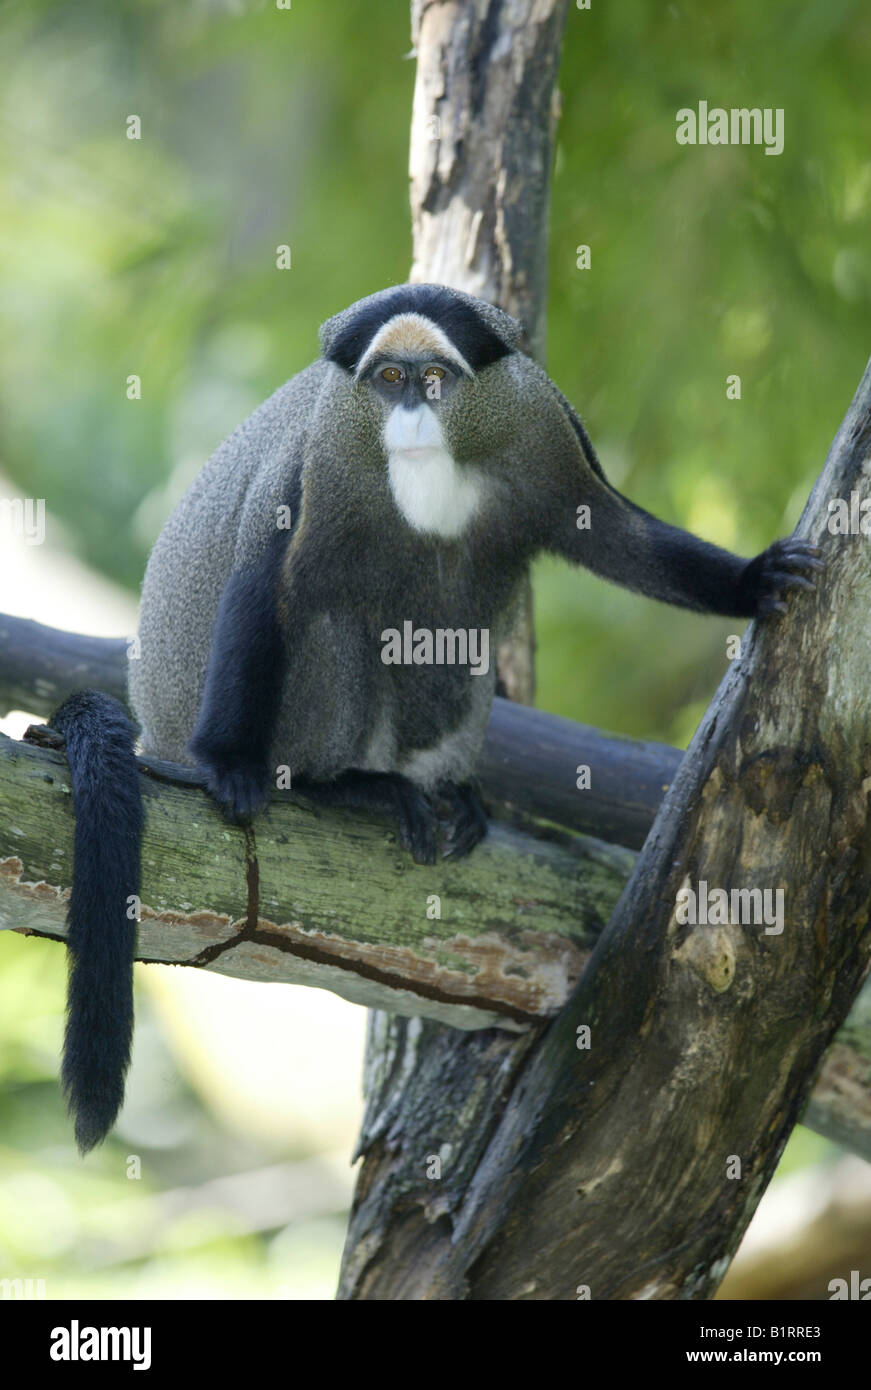 Brazza's Monkey (Cercopithecus neglectus), Africa Stock Photo